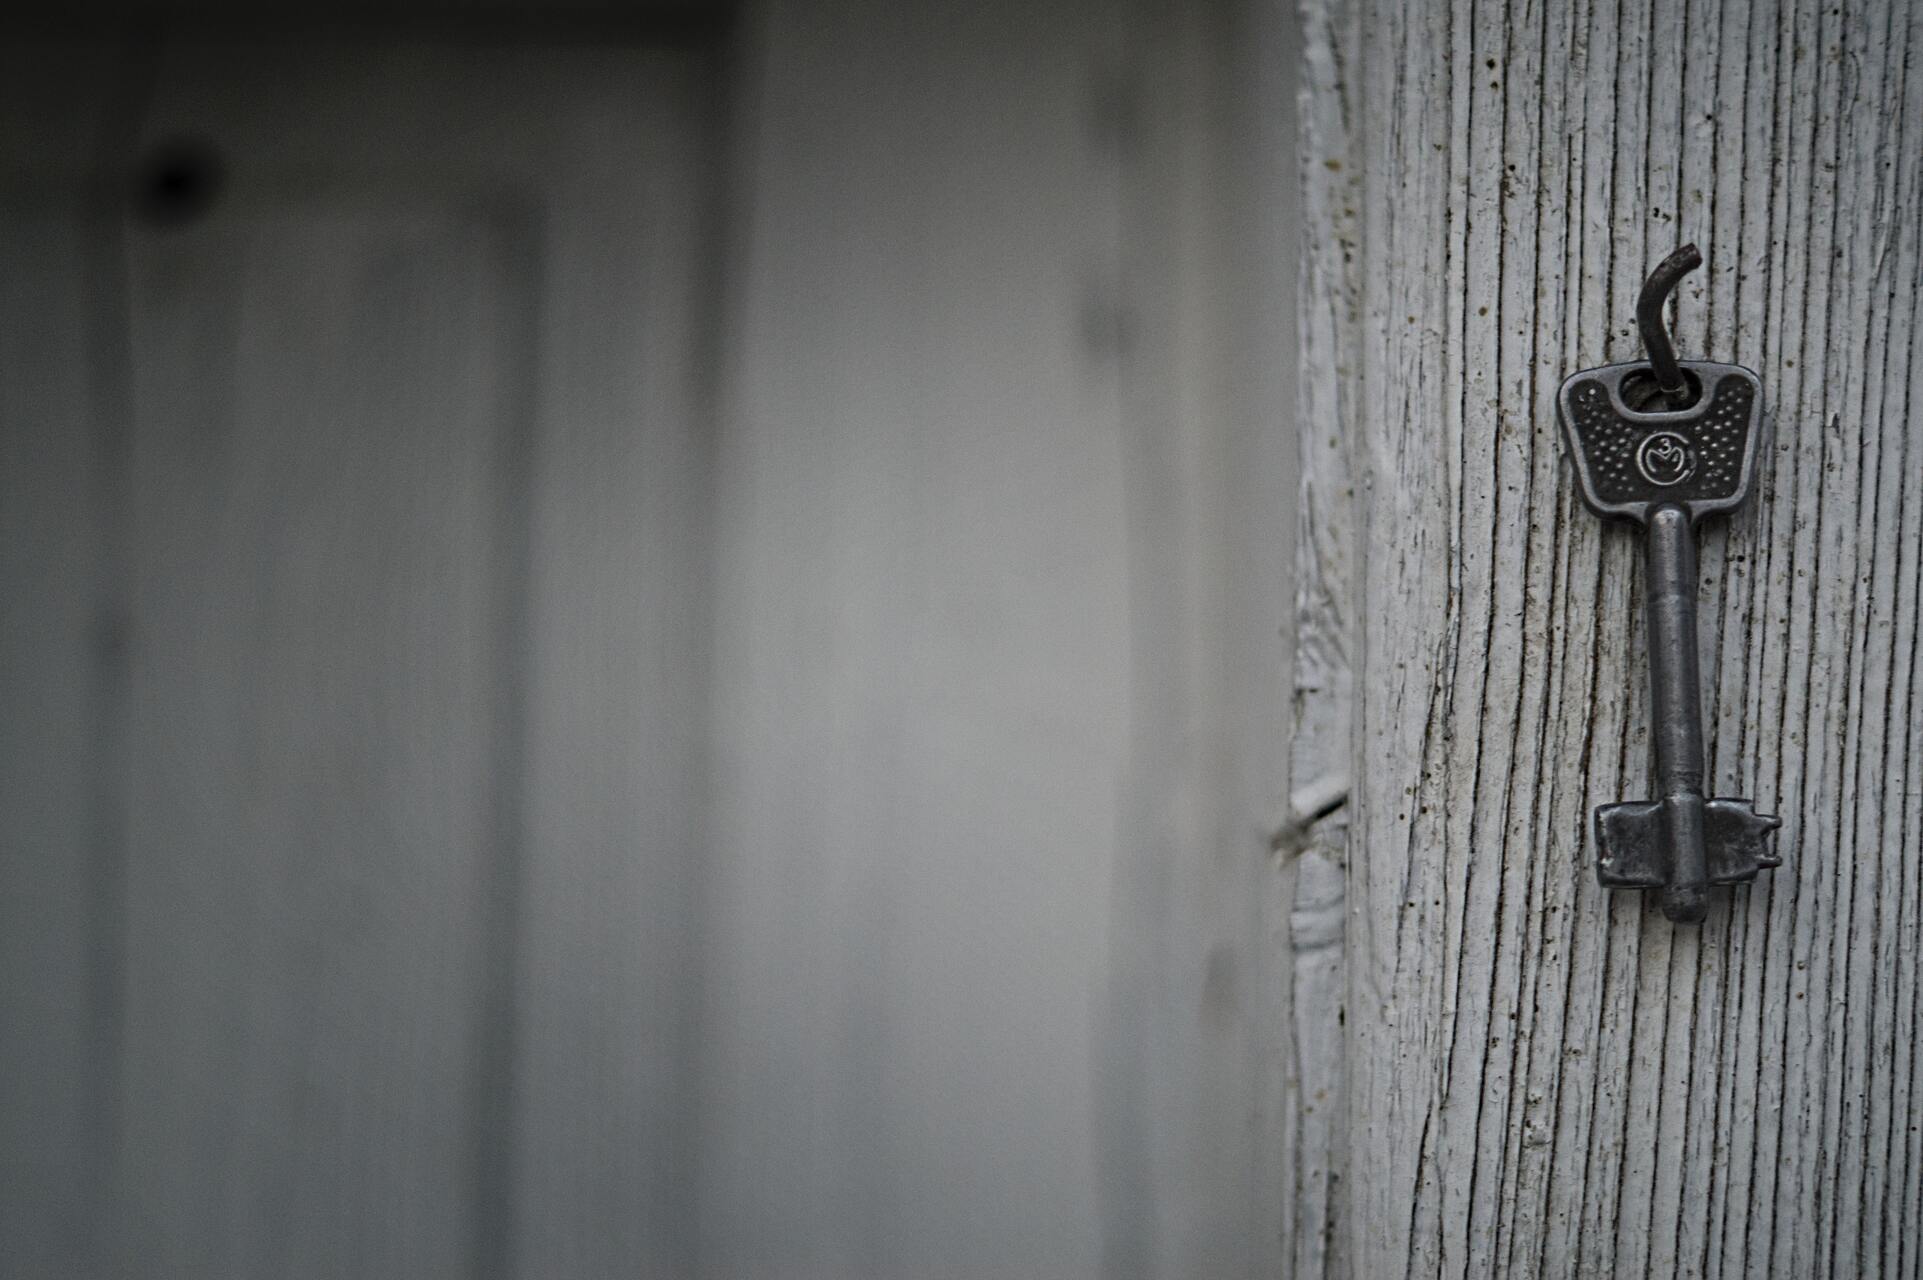 Foto eines Schlüssels, der an einer Wand aufgehängt wurde.